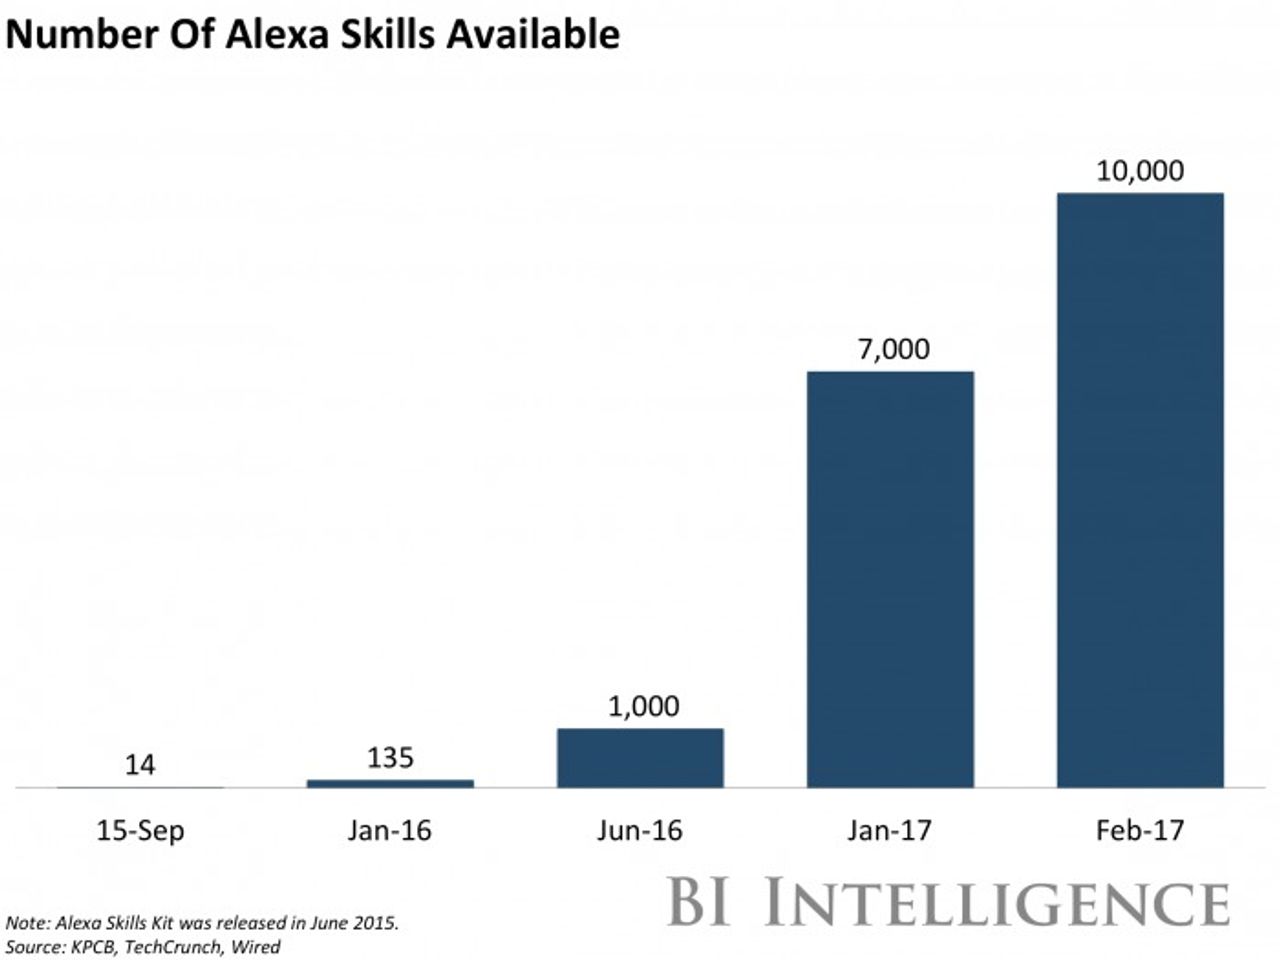 Alexa Skillsの数の推移を示したグラフ